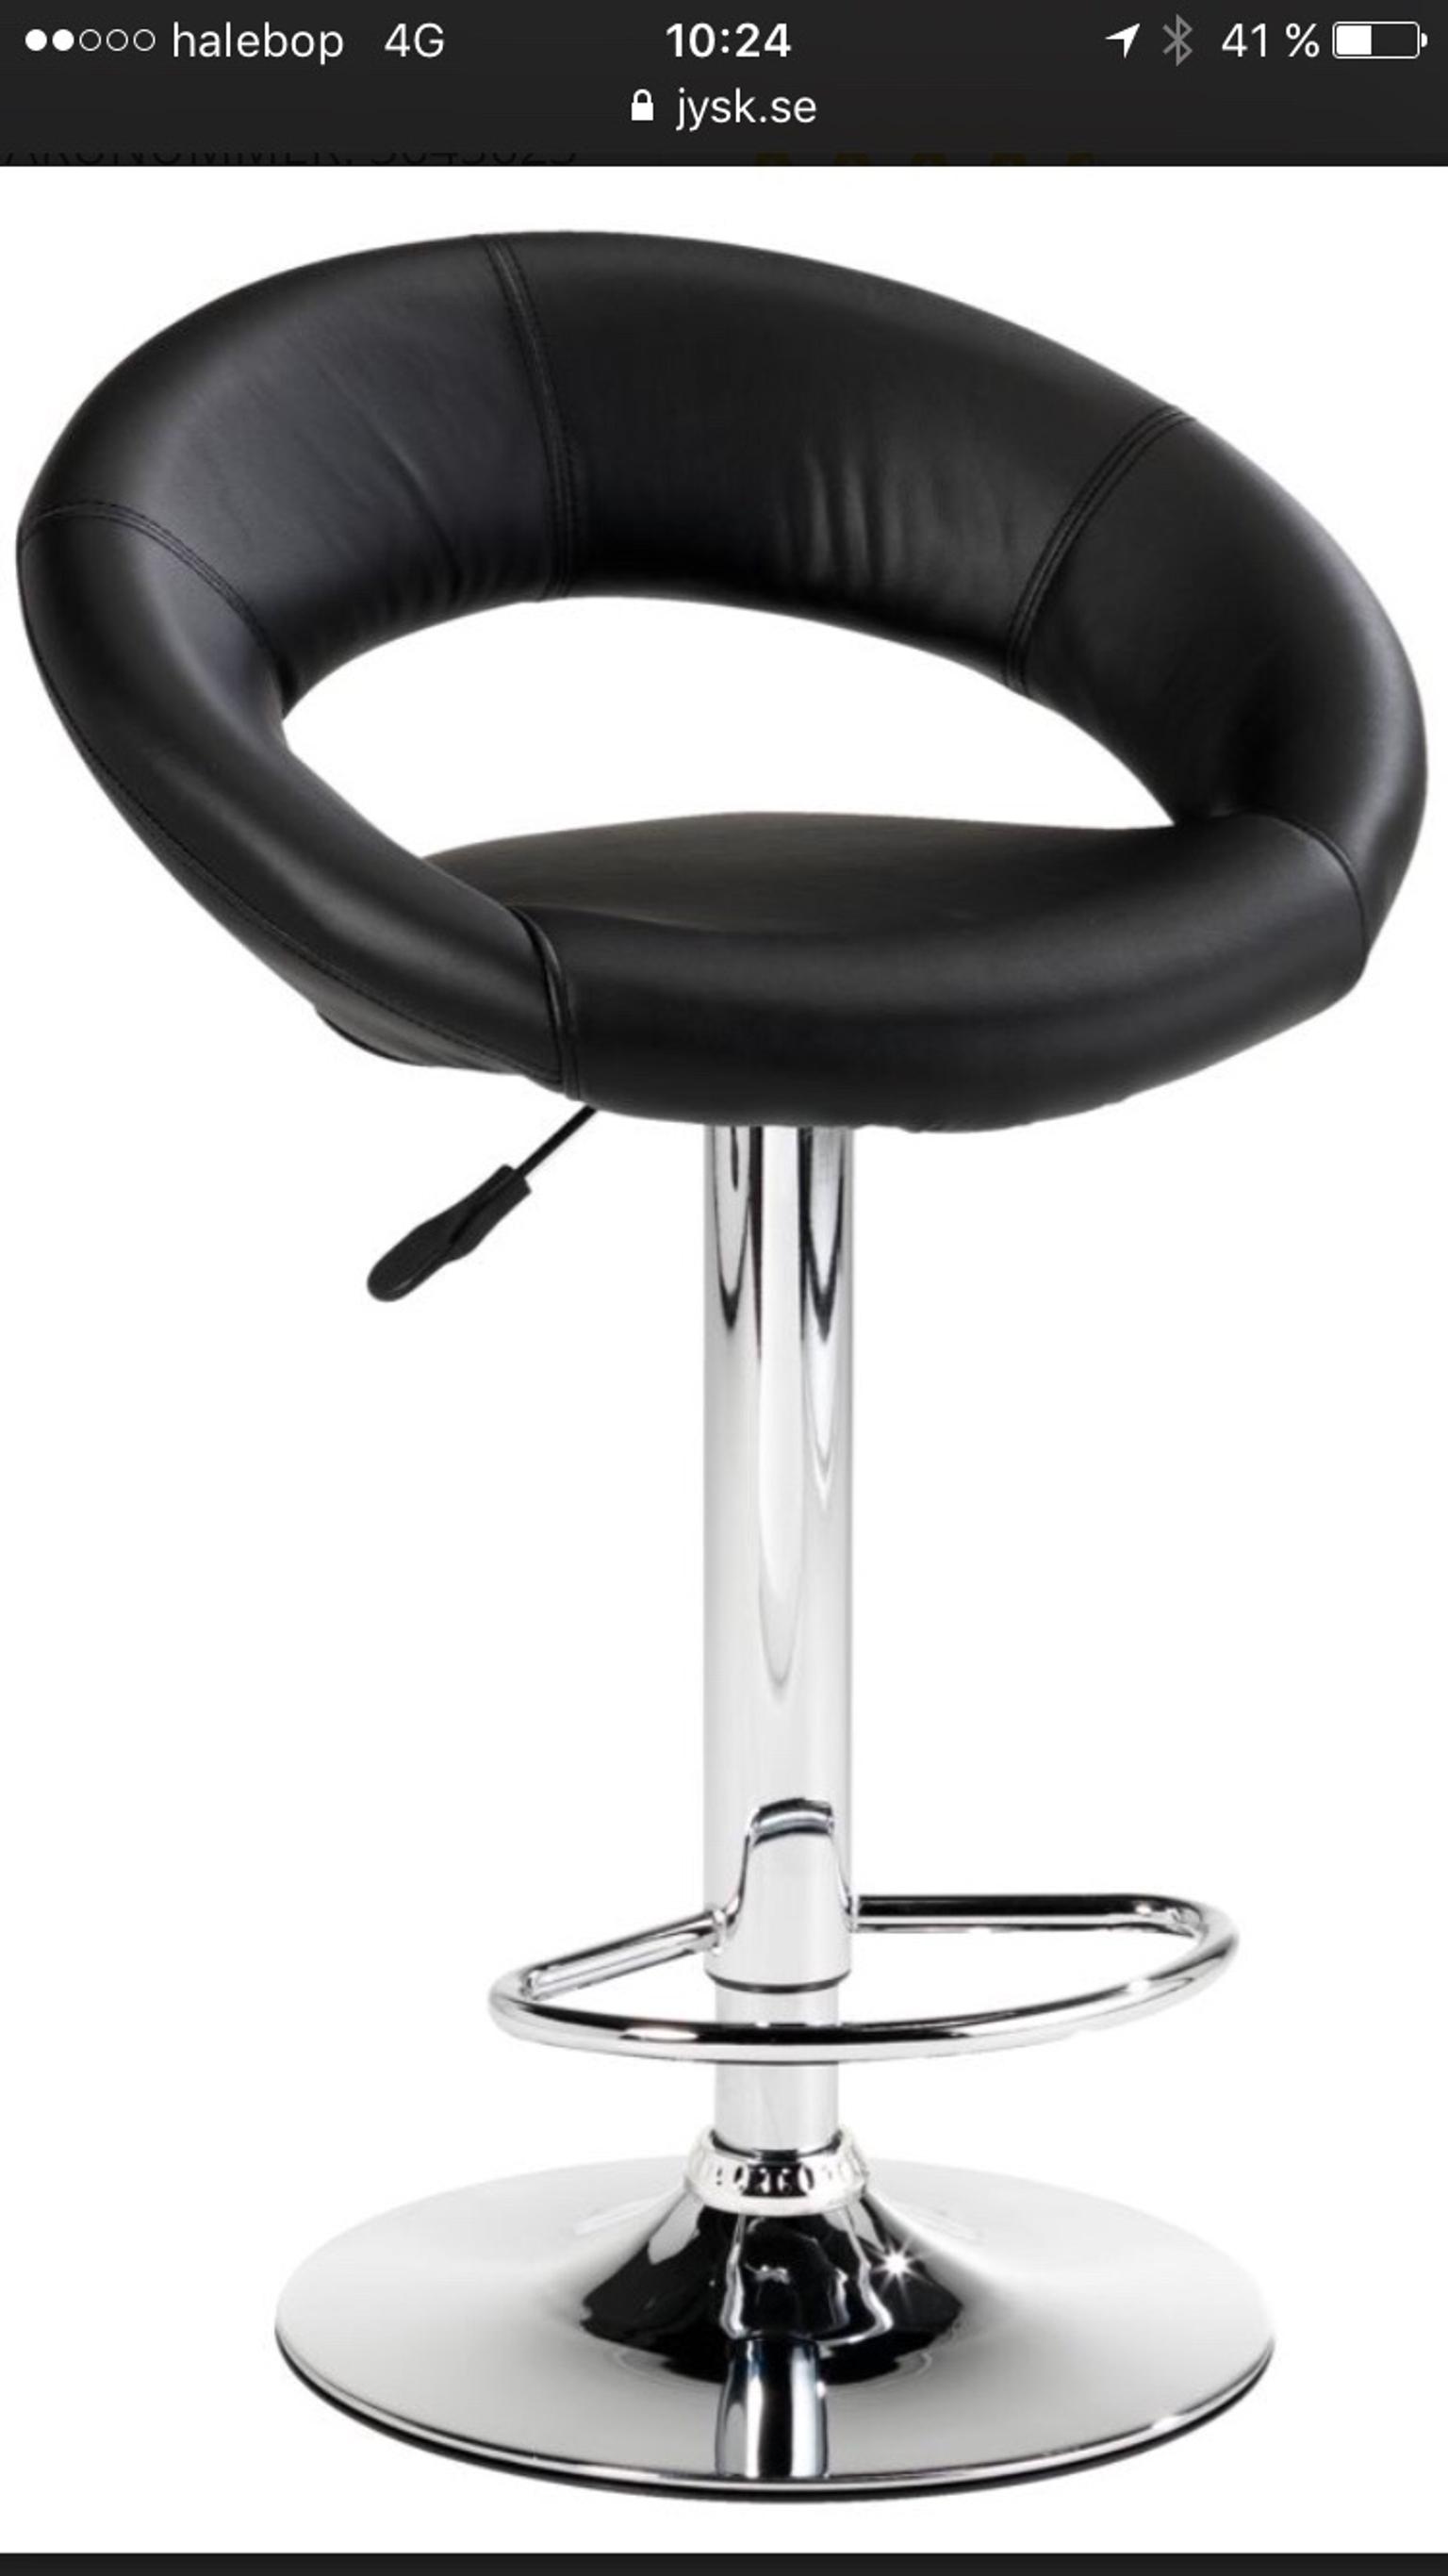 Черный хром стул. JYSK барный стул. J-607 барный стул, чёрный. Стул кухонный барный стул Jonstrup JYSK. Барный стул икеа кожаный.